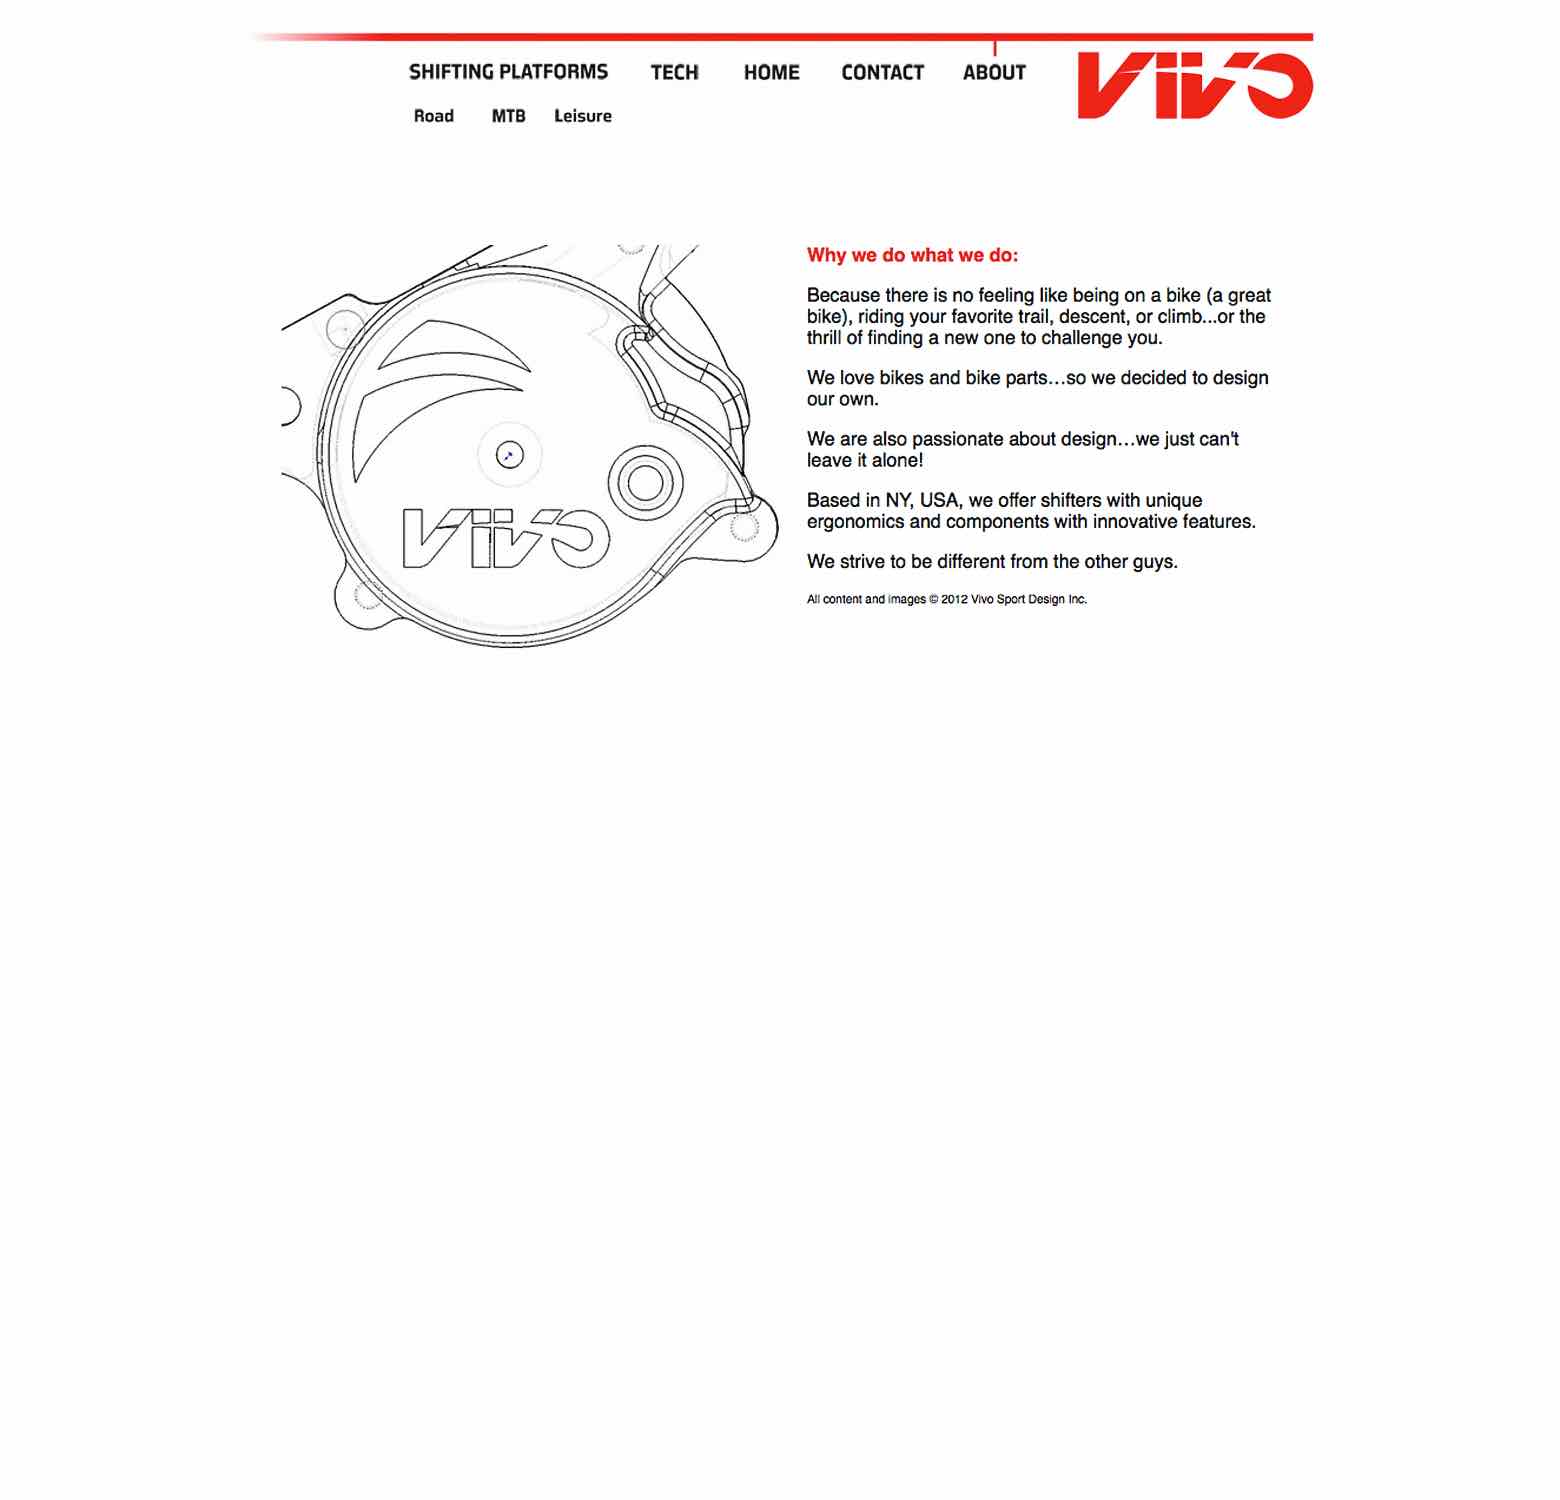 Vivo - web site 2012 image 6 main image